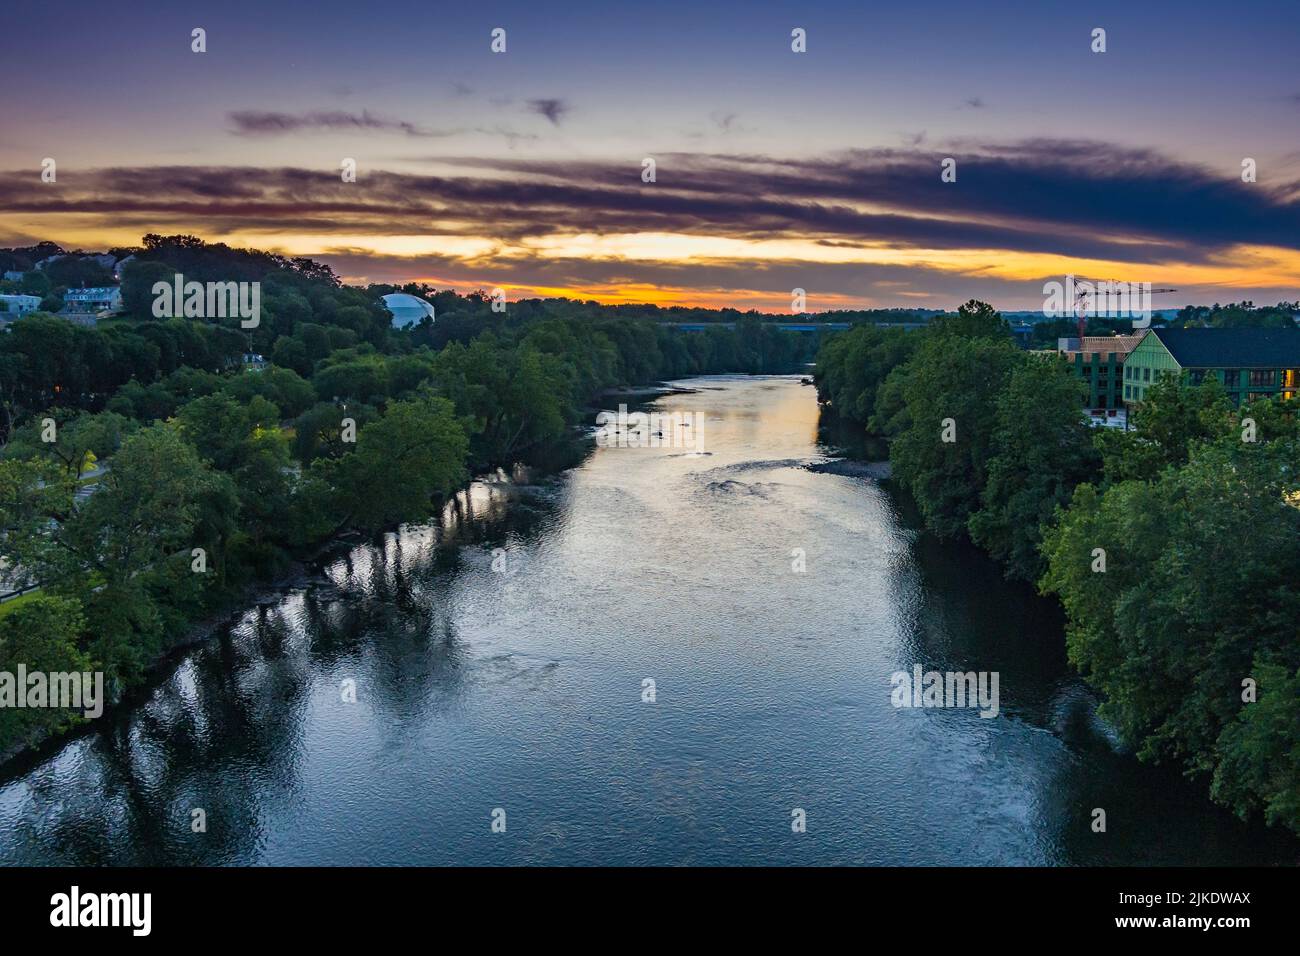 Vue aérienne de la rivière Schuylkill près de Conshohocken Pennsylvanie au coucher du soleil. Banque D'Images